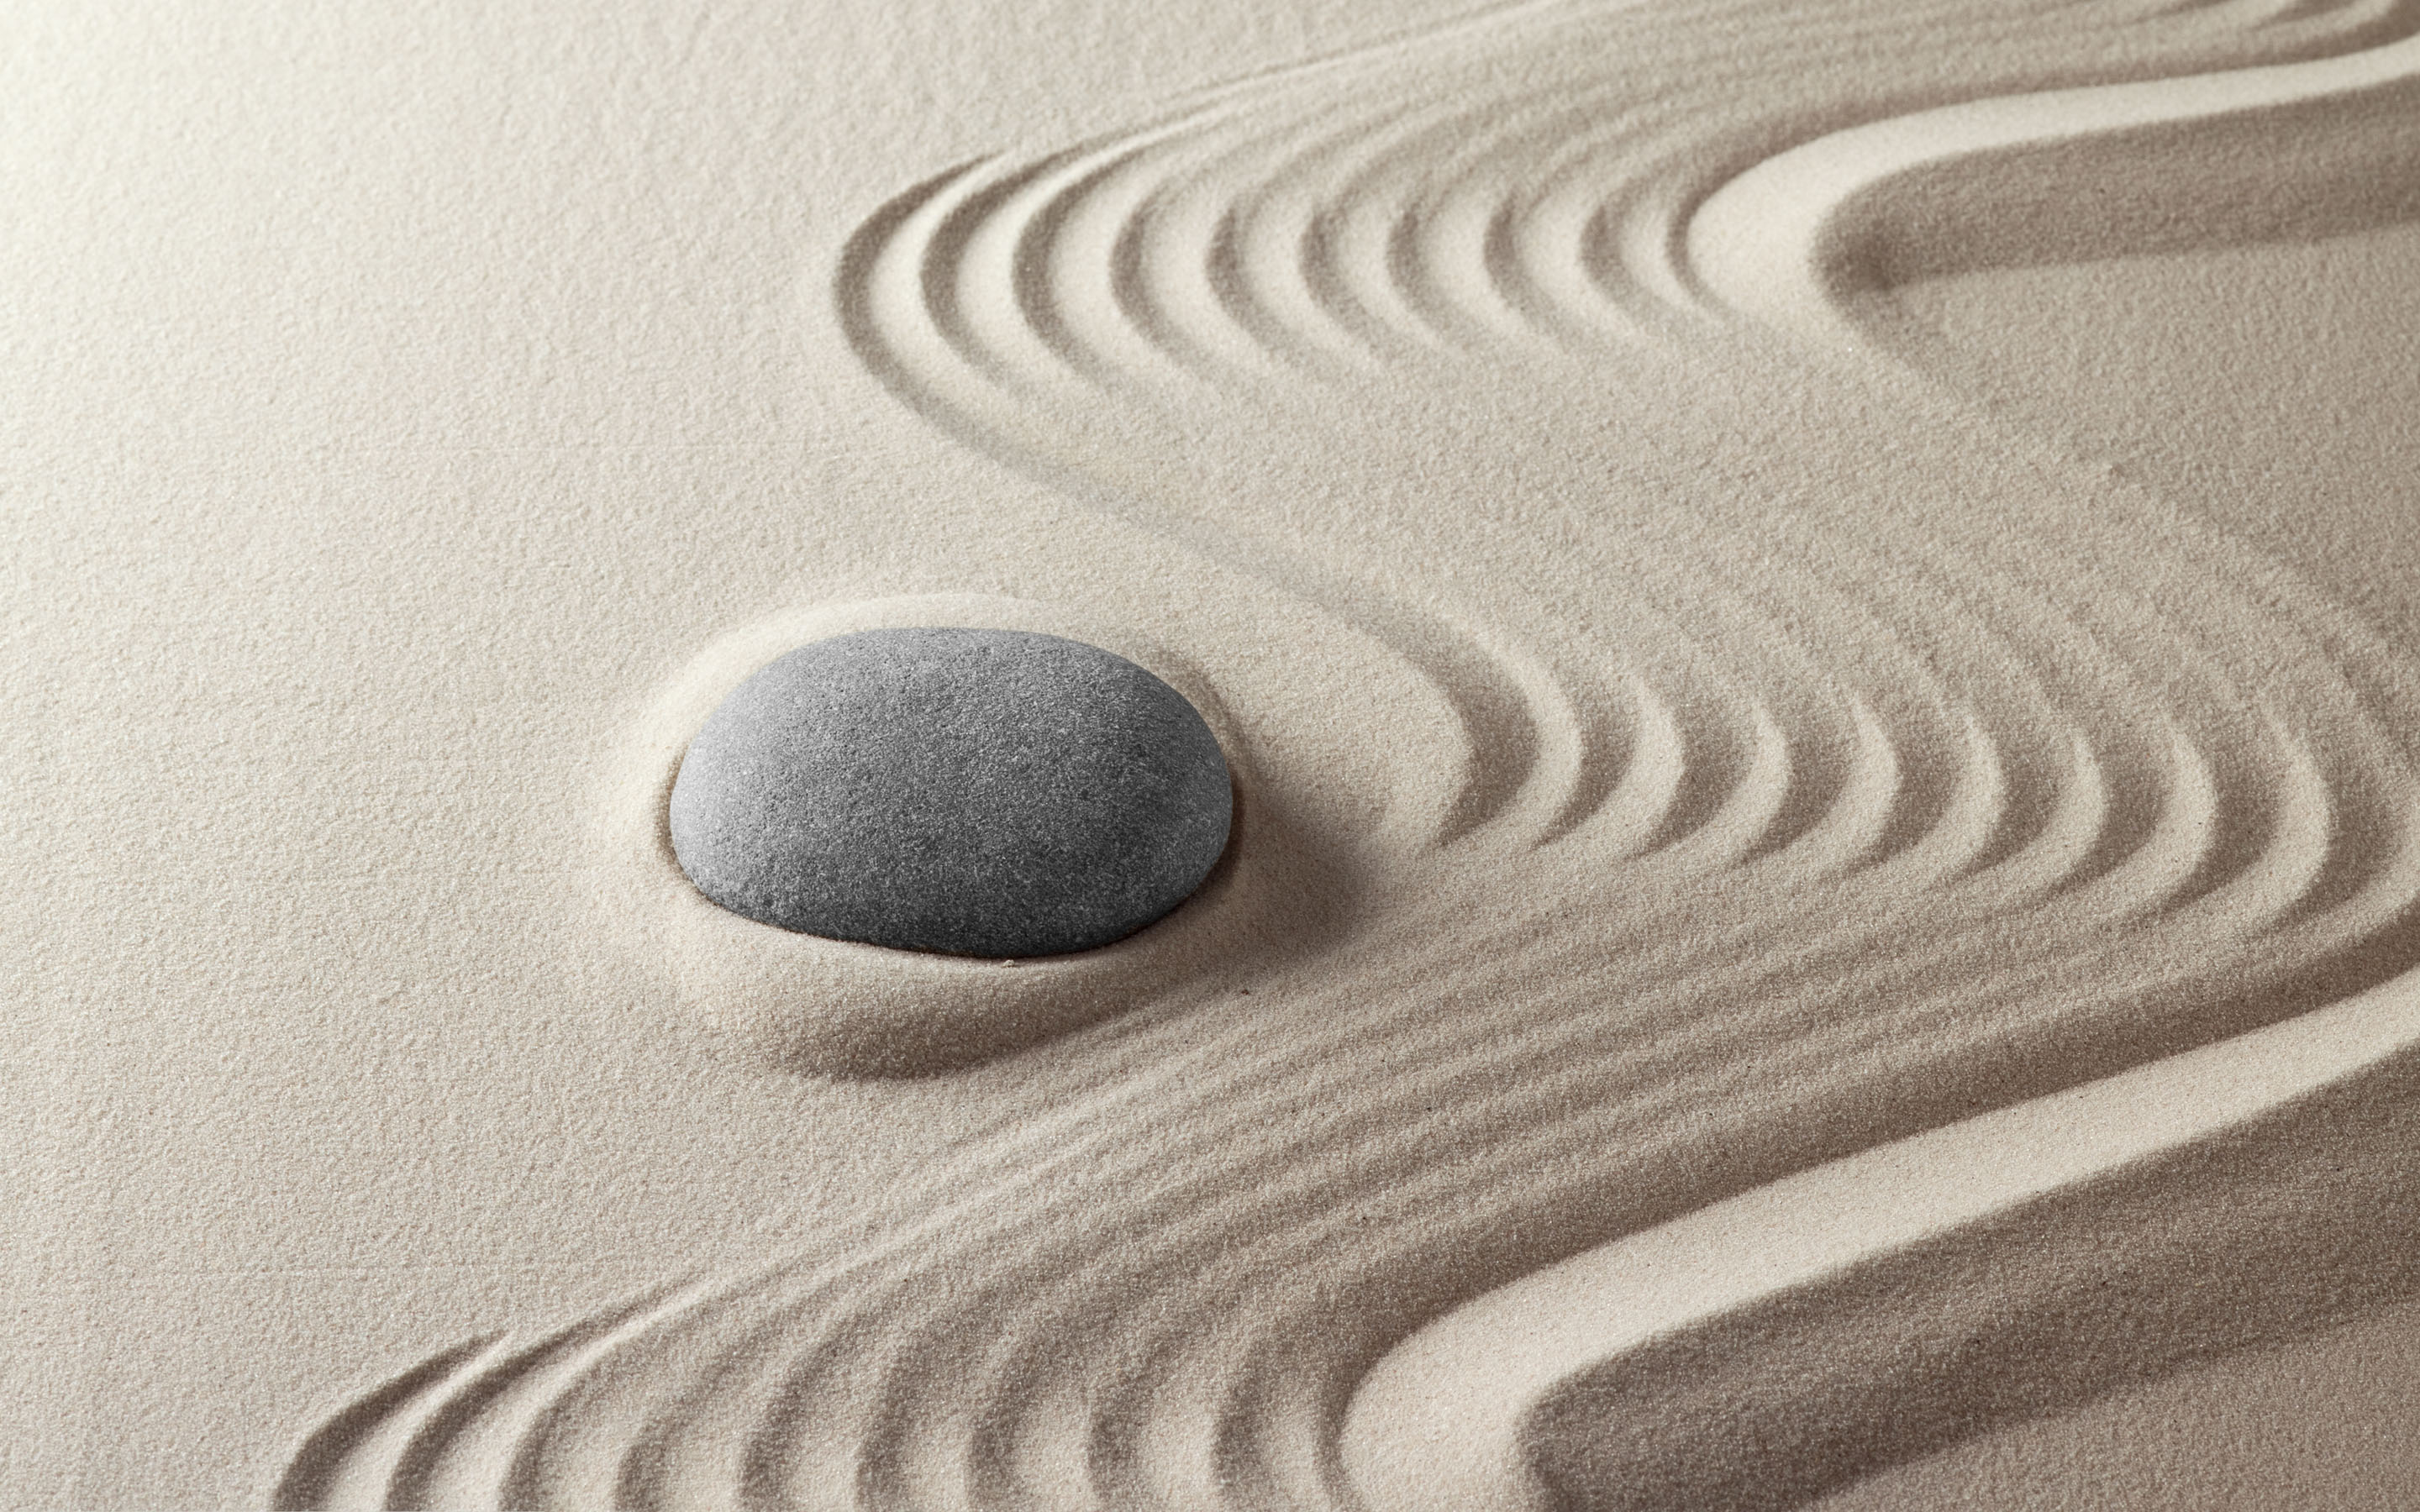 Religious Zen HD Wallpaper | Background Image